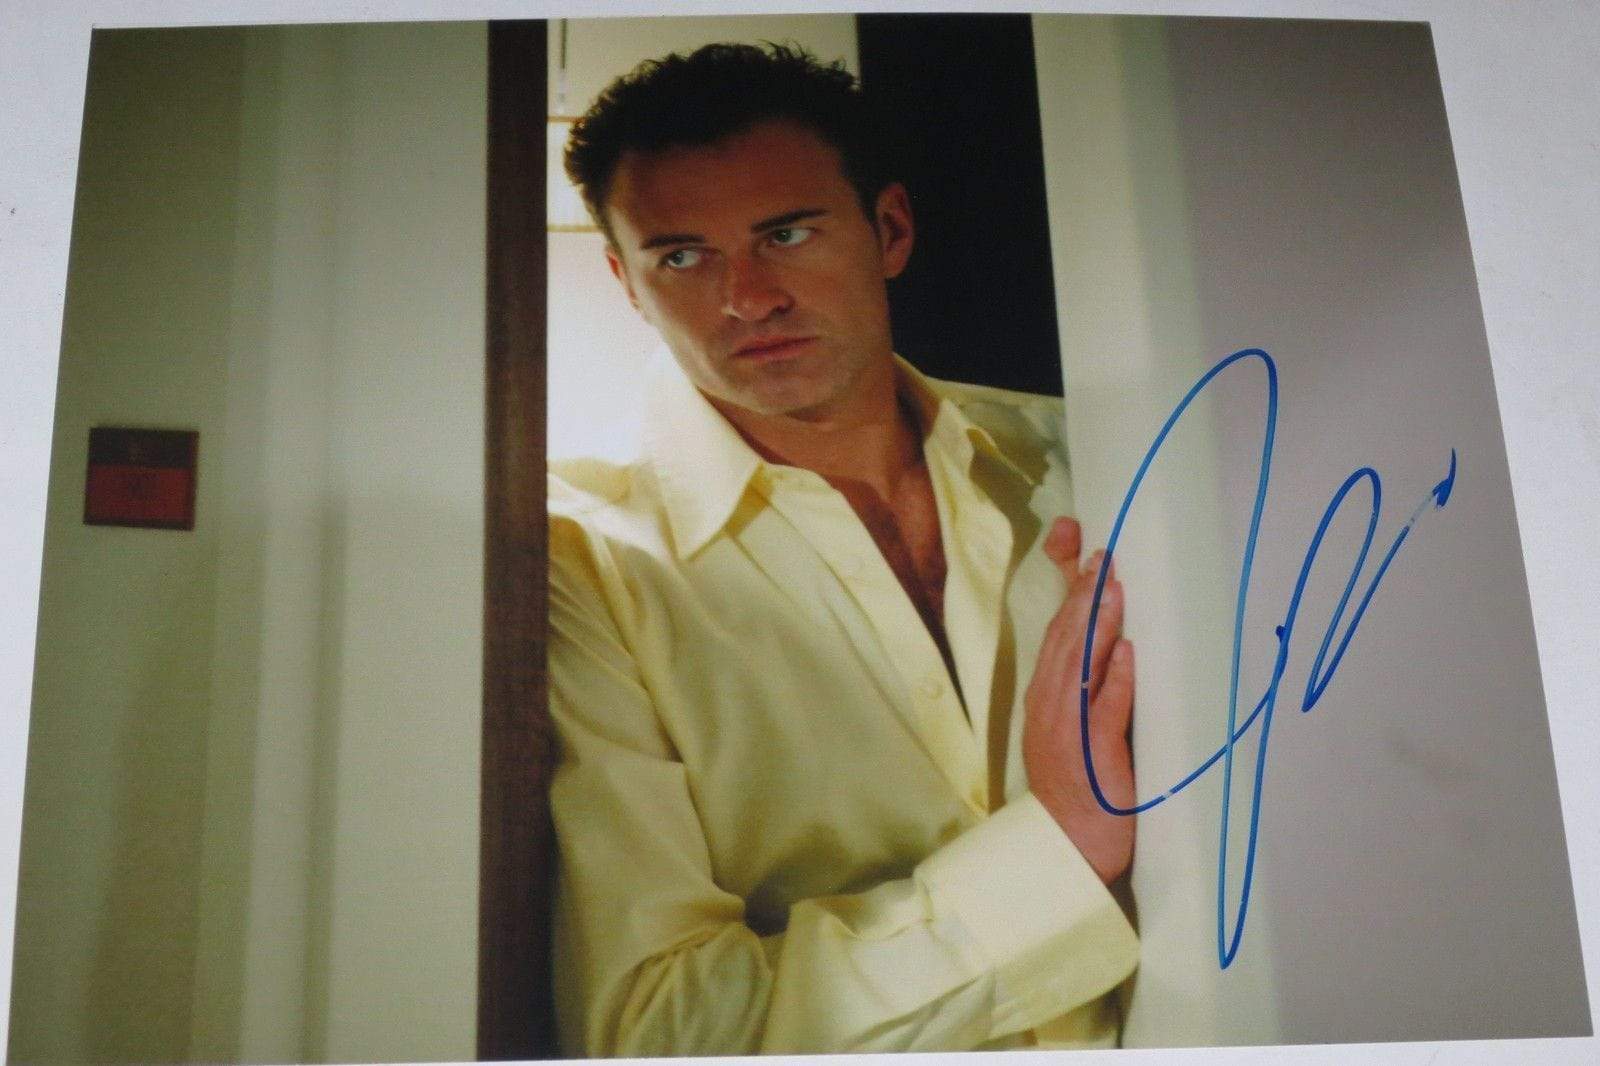 Julian McMahon Authentic Autographed 8x10 Photo - Prime Time Signatures - TV & Film